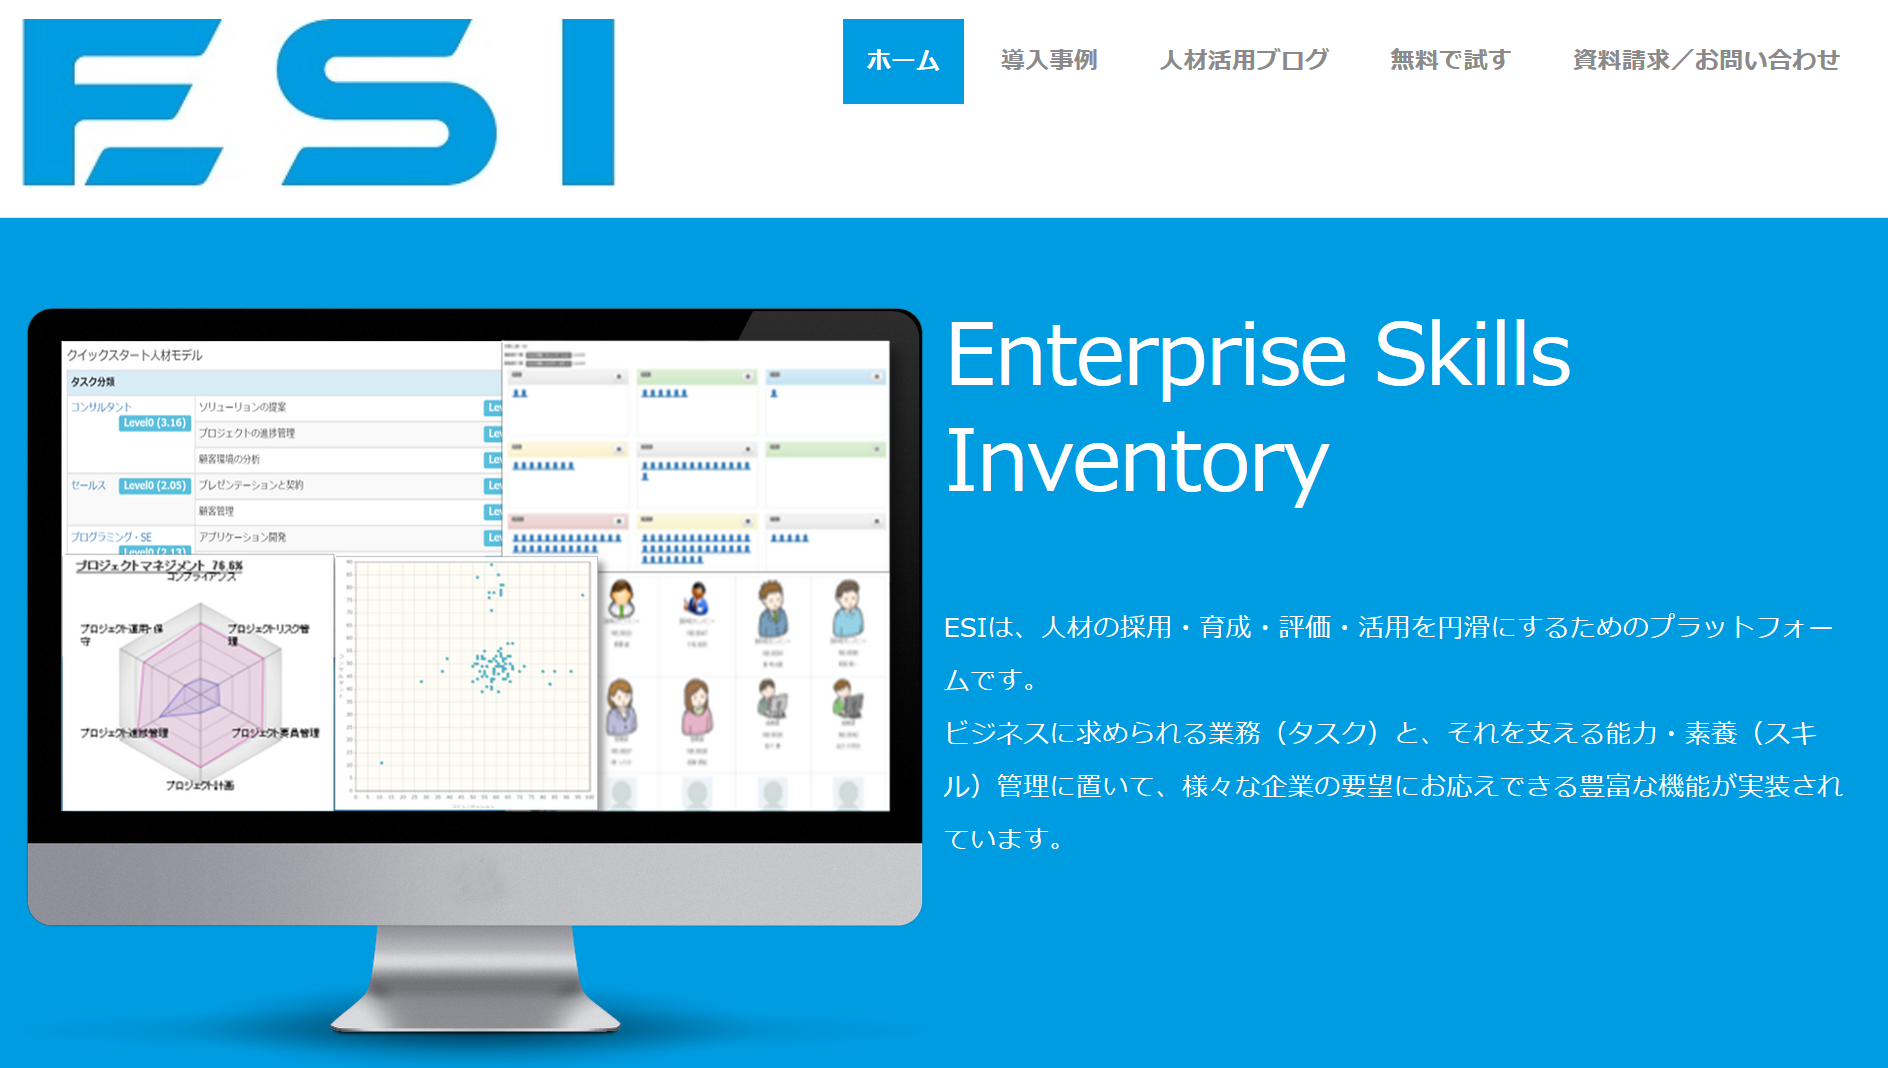 スキルナビ Enterprise Skills Inventory